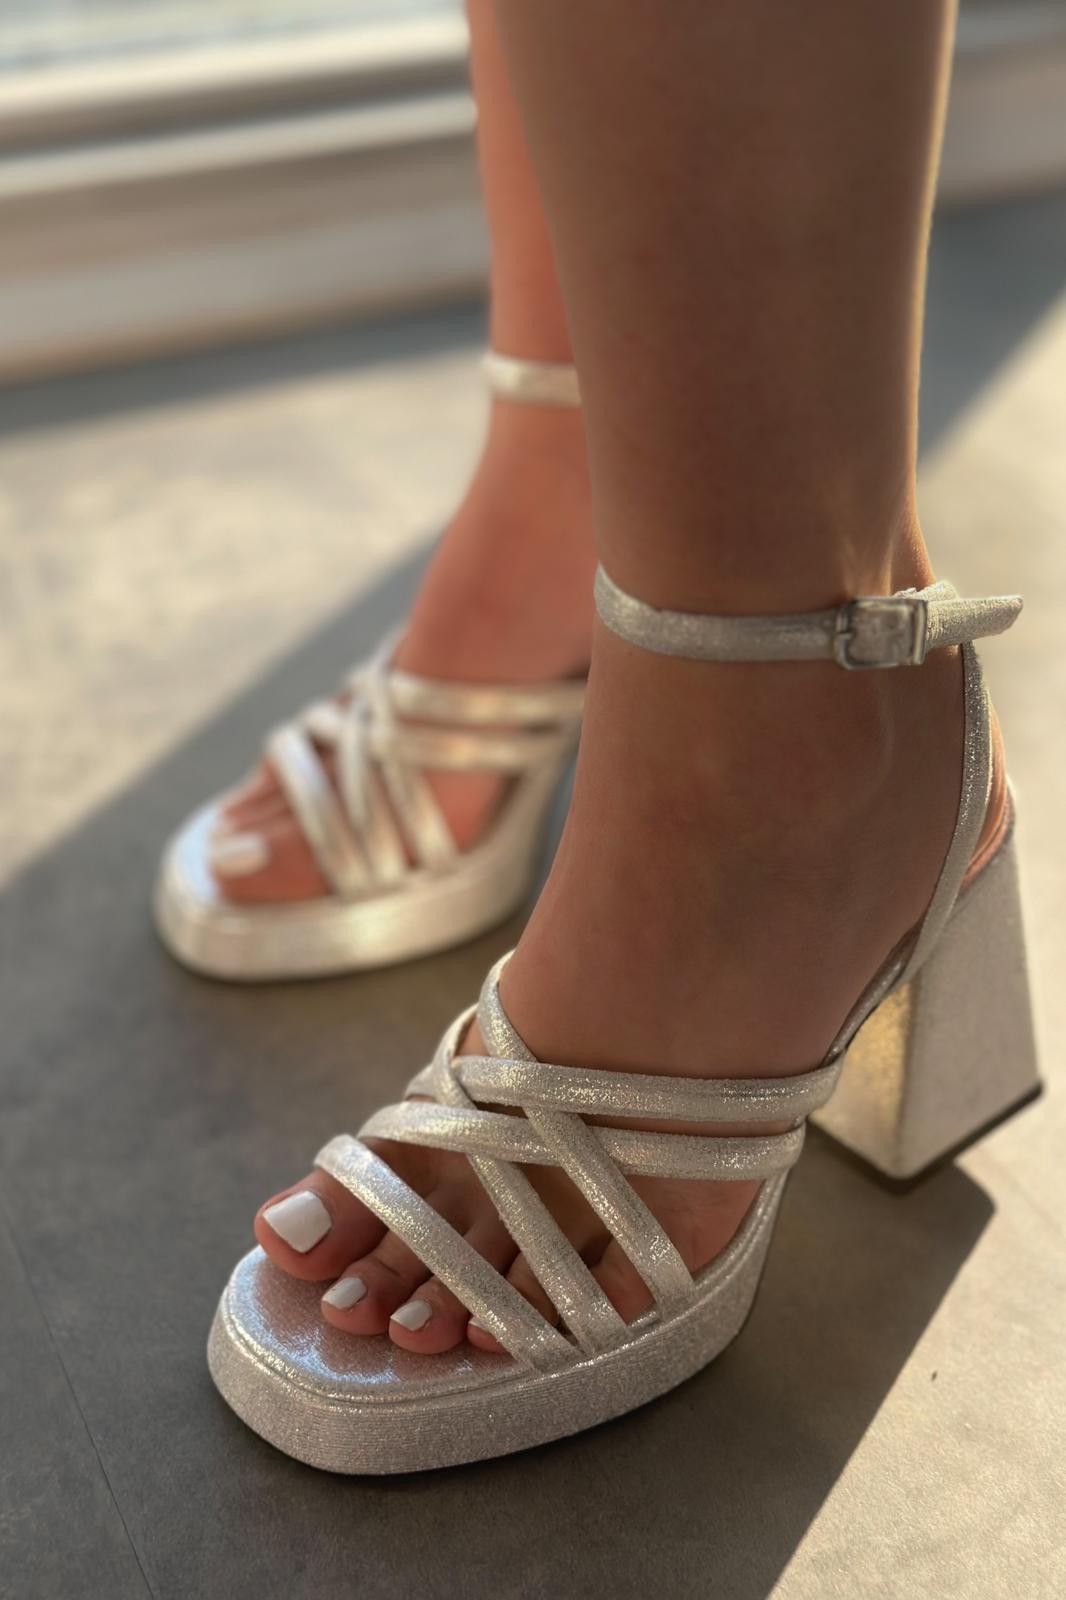 Olida Parlak Deri Kadın Platform Topuklu Ayakkabı Gümüş